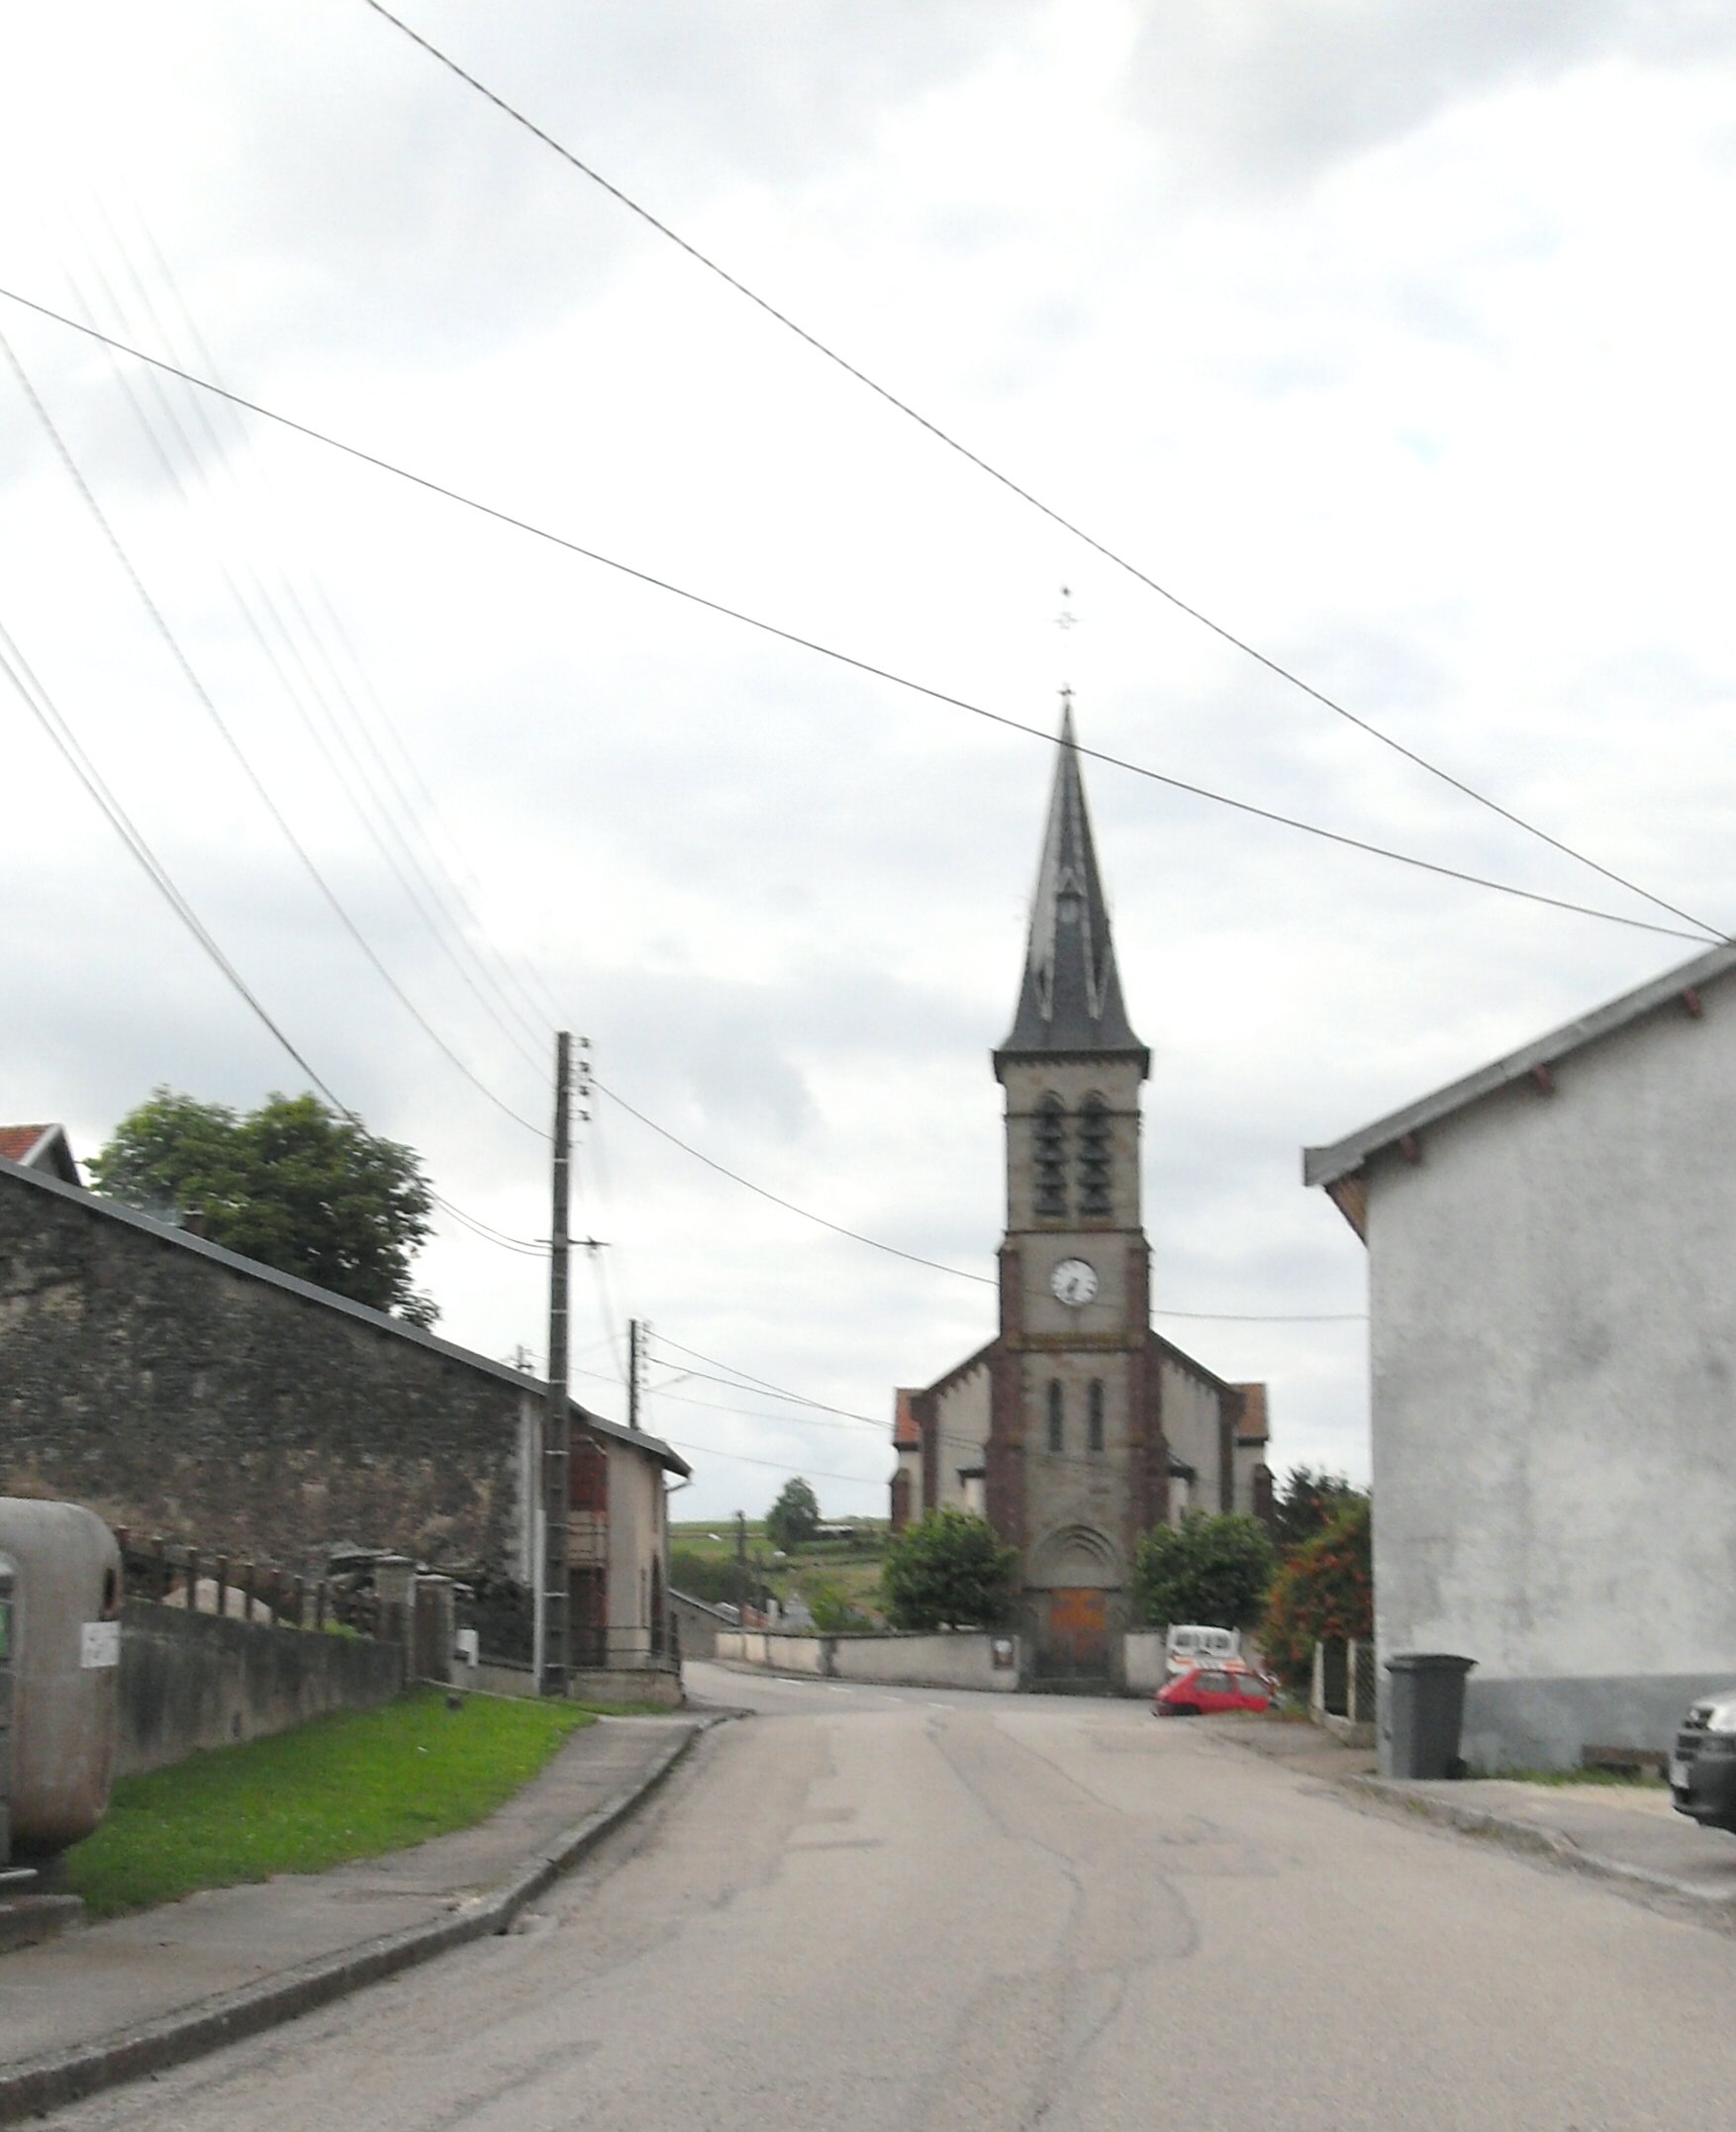 Provenchères-lès-darney